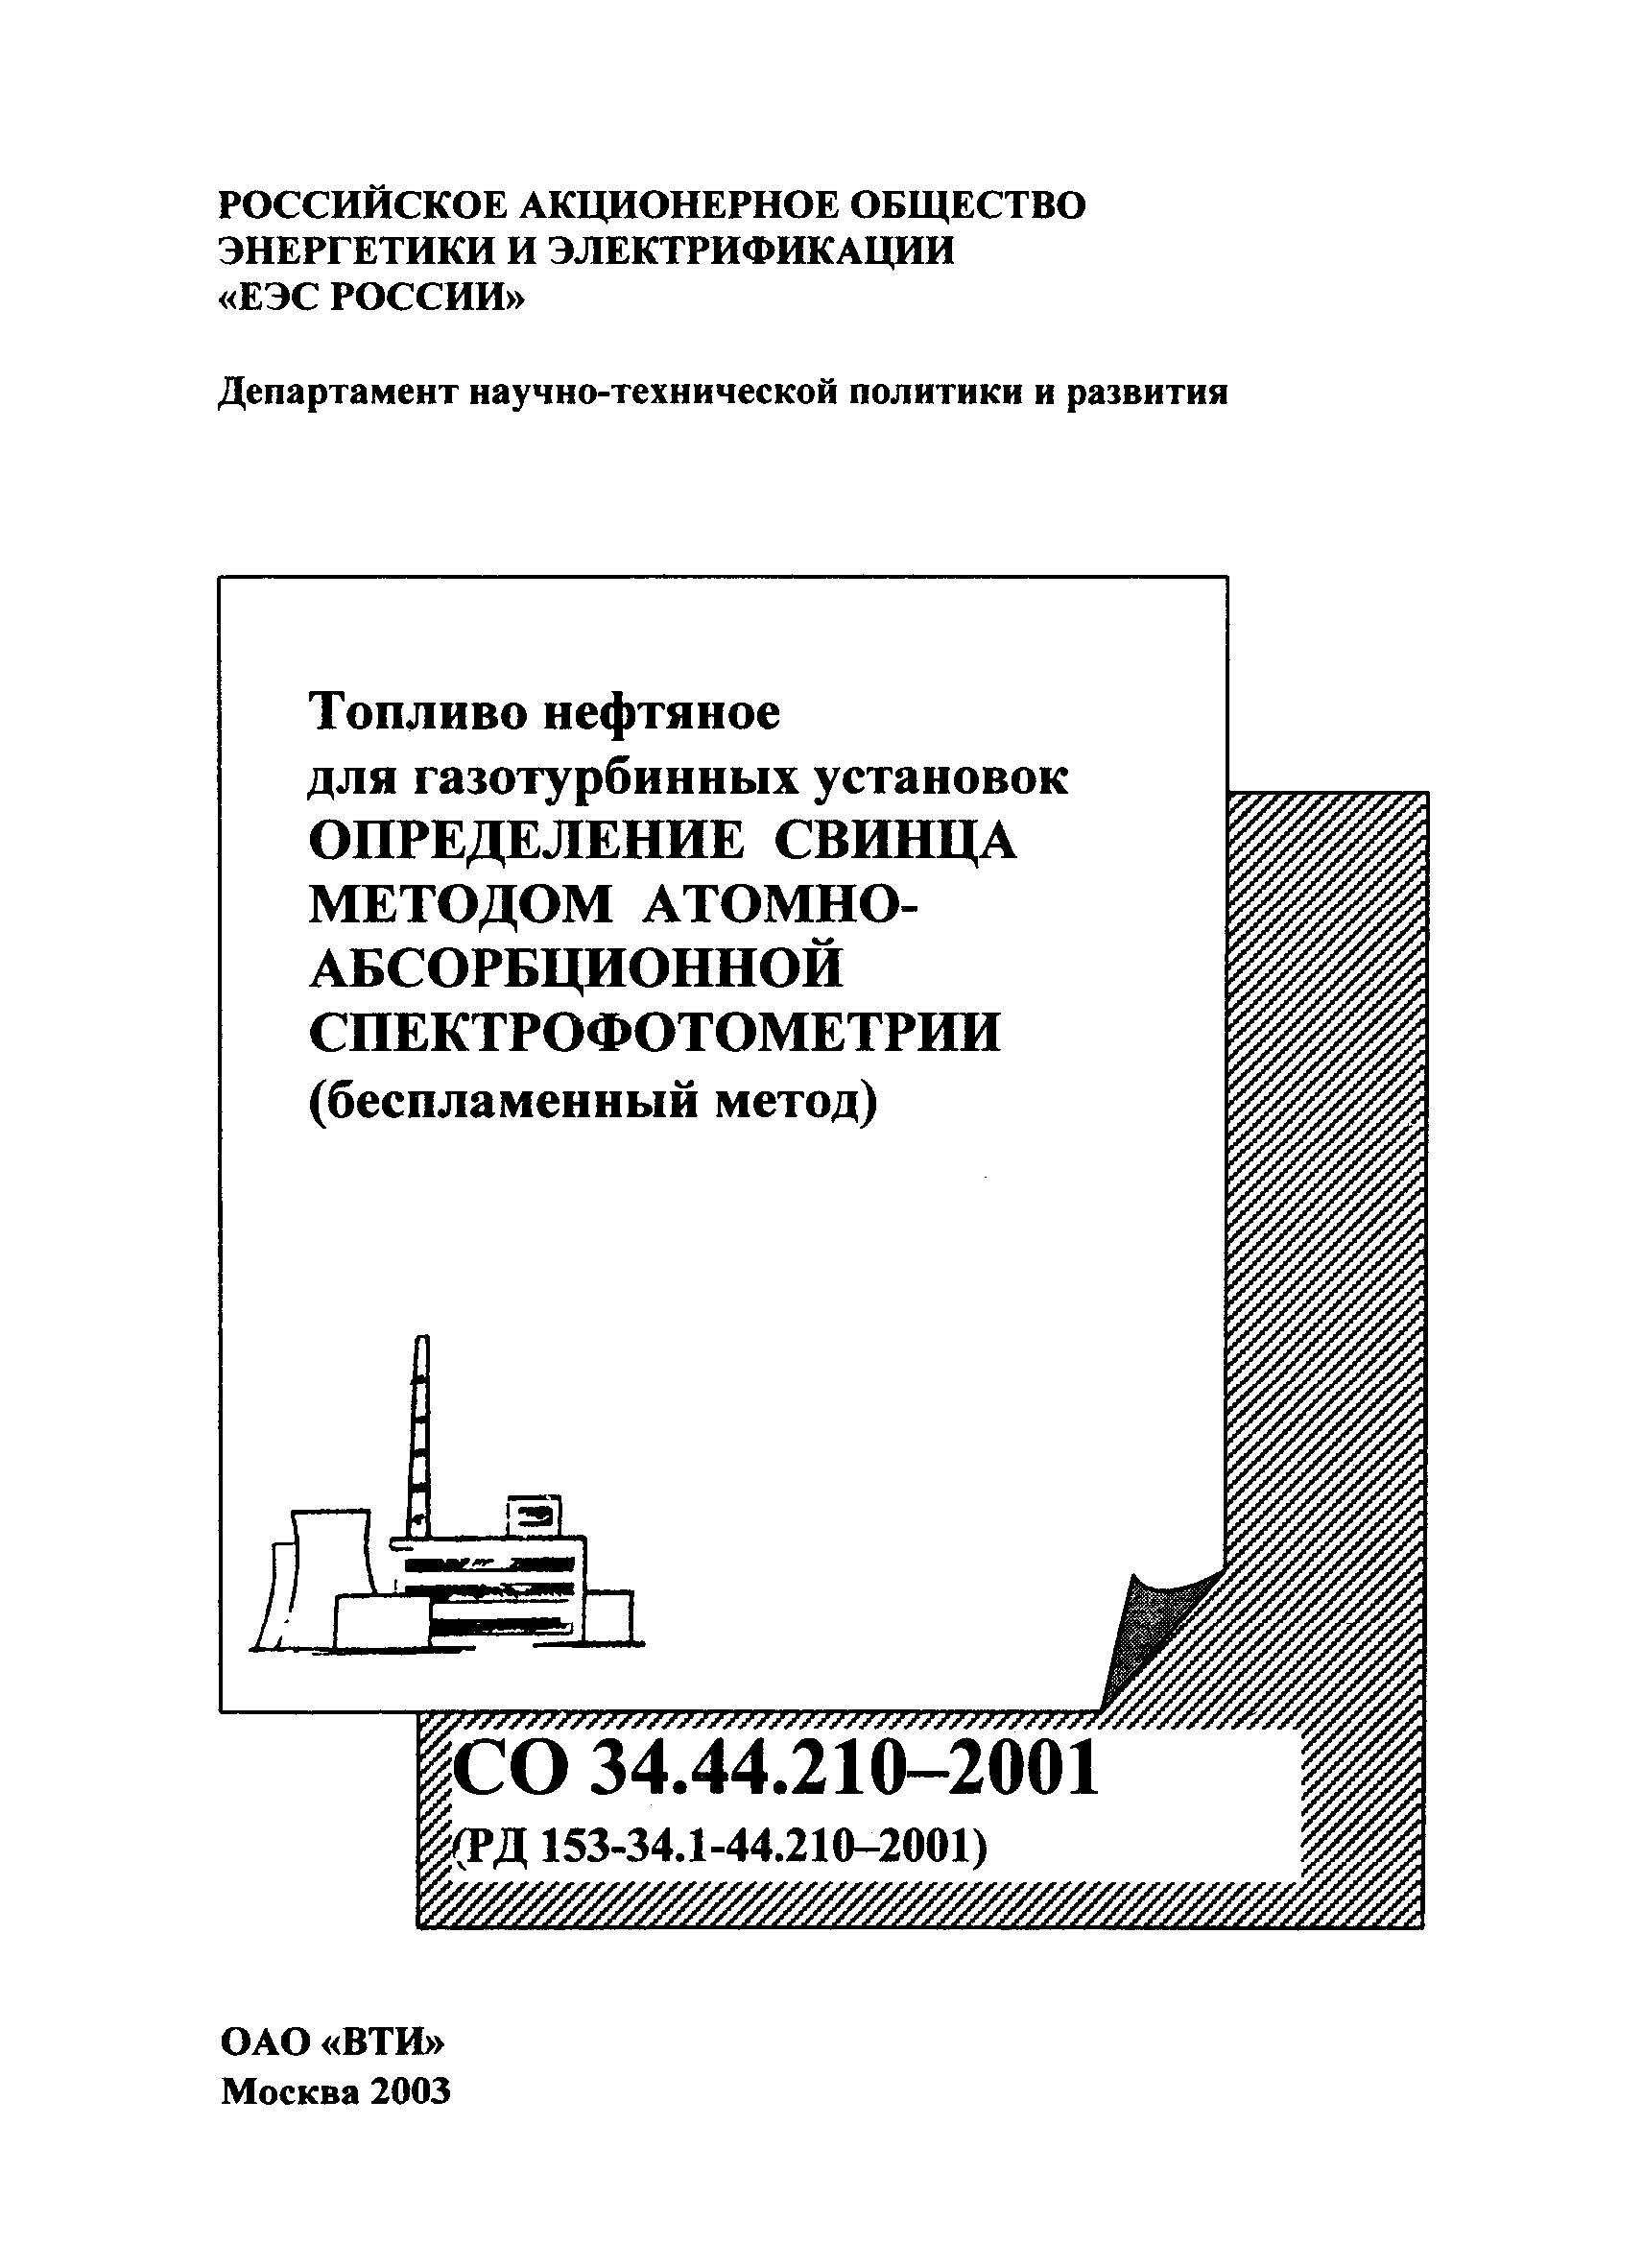 РД 153-34.1-44.210-2001